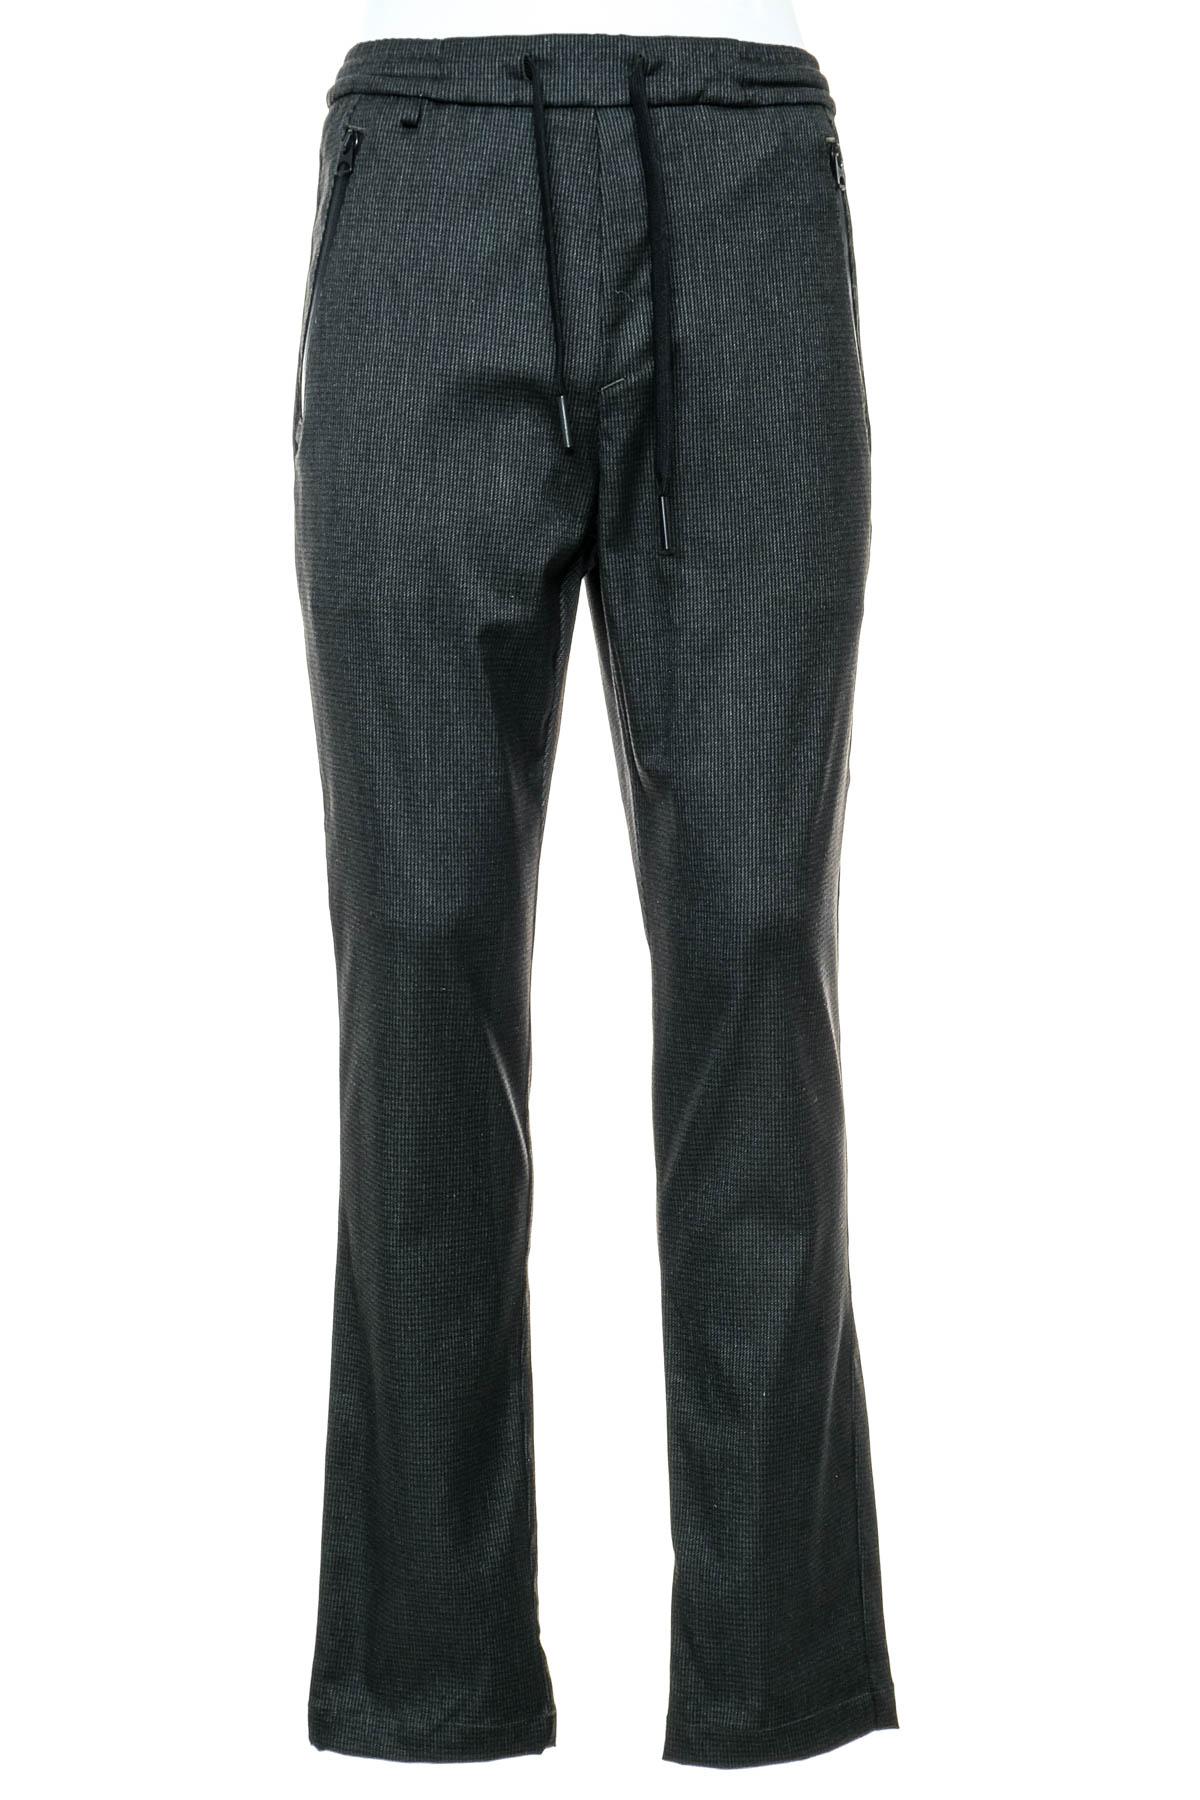 Men's trousers - REPLAY - 0